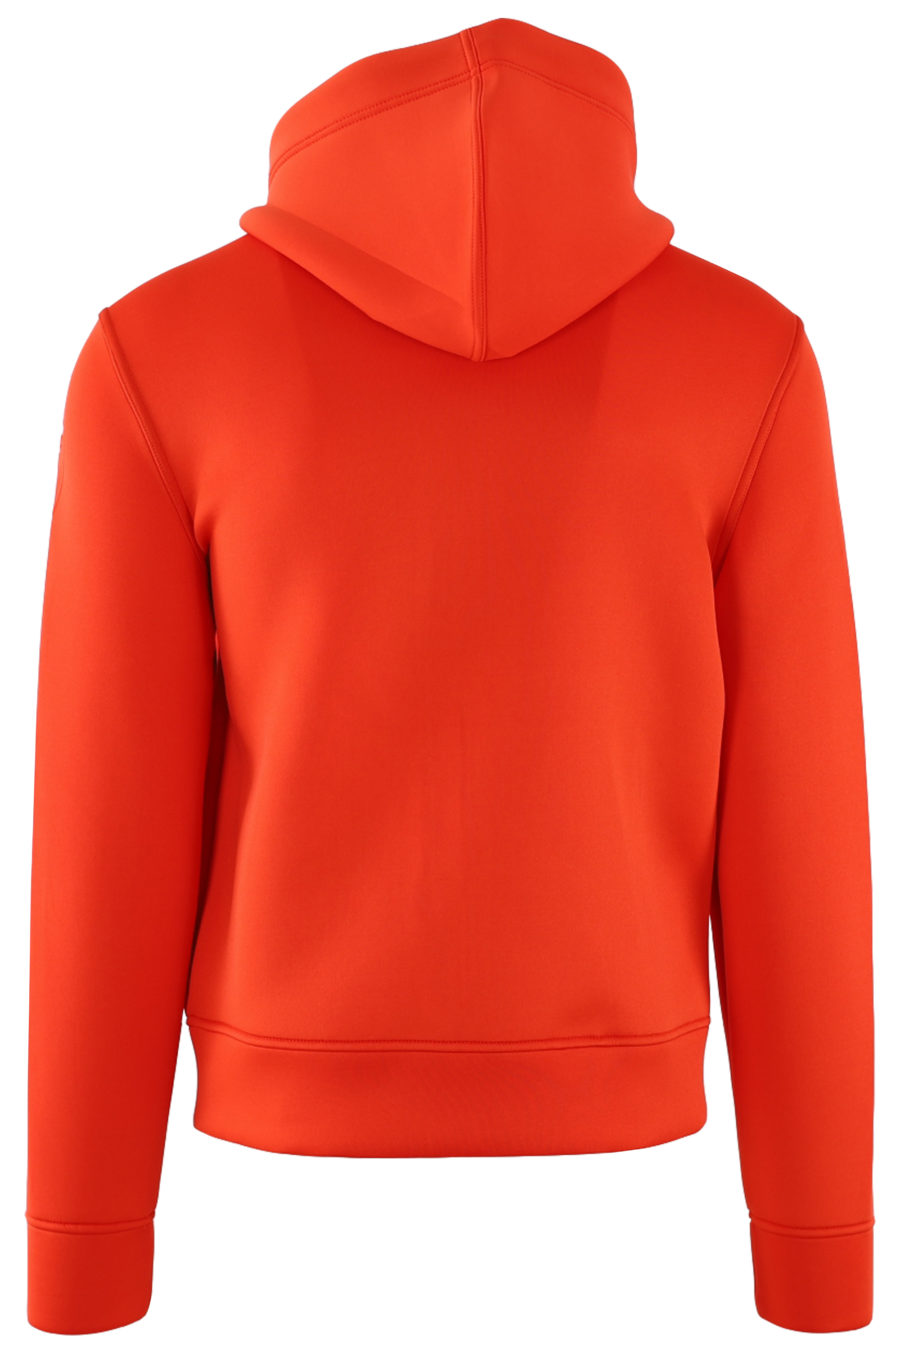 Orange neoprene sweatshirt with hood and zip - IMG 0511